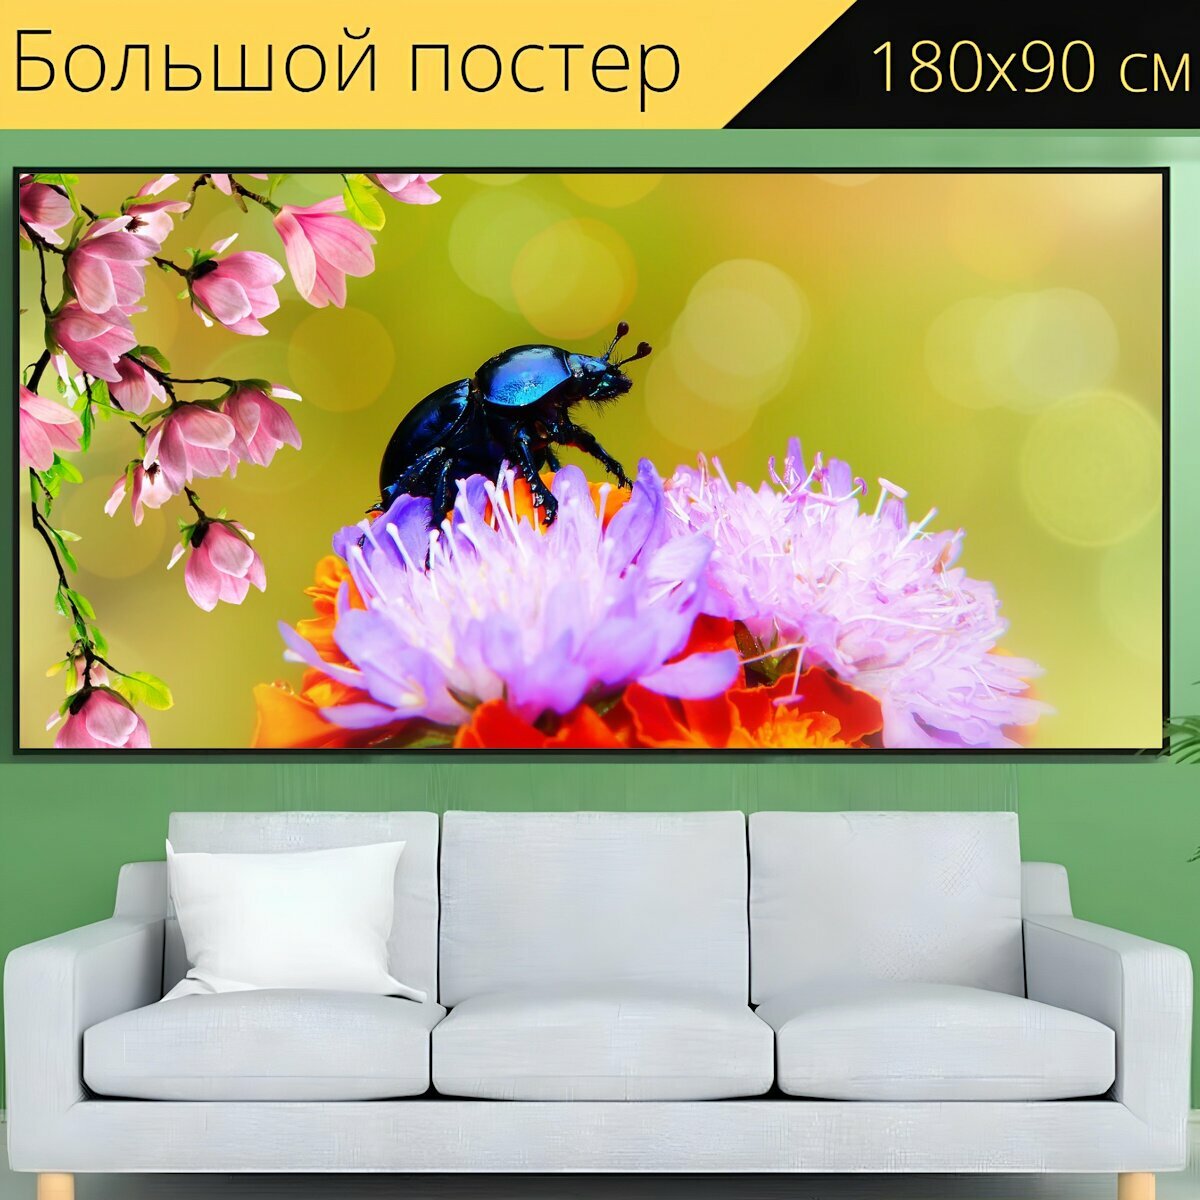 Большой постер "Лесной жук, насекомое, букет цветов" 180 x 90 см. для интерьера